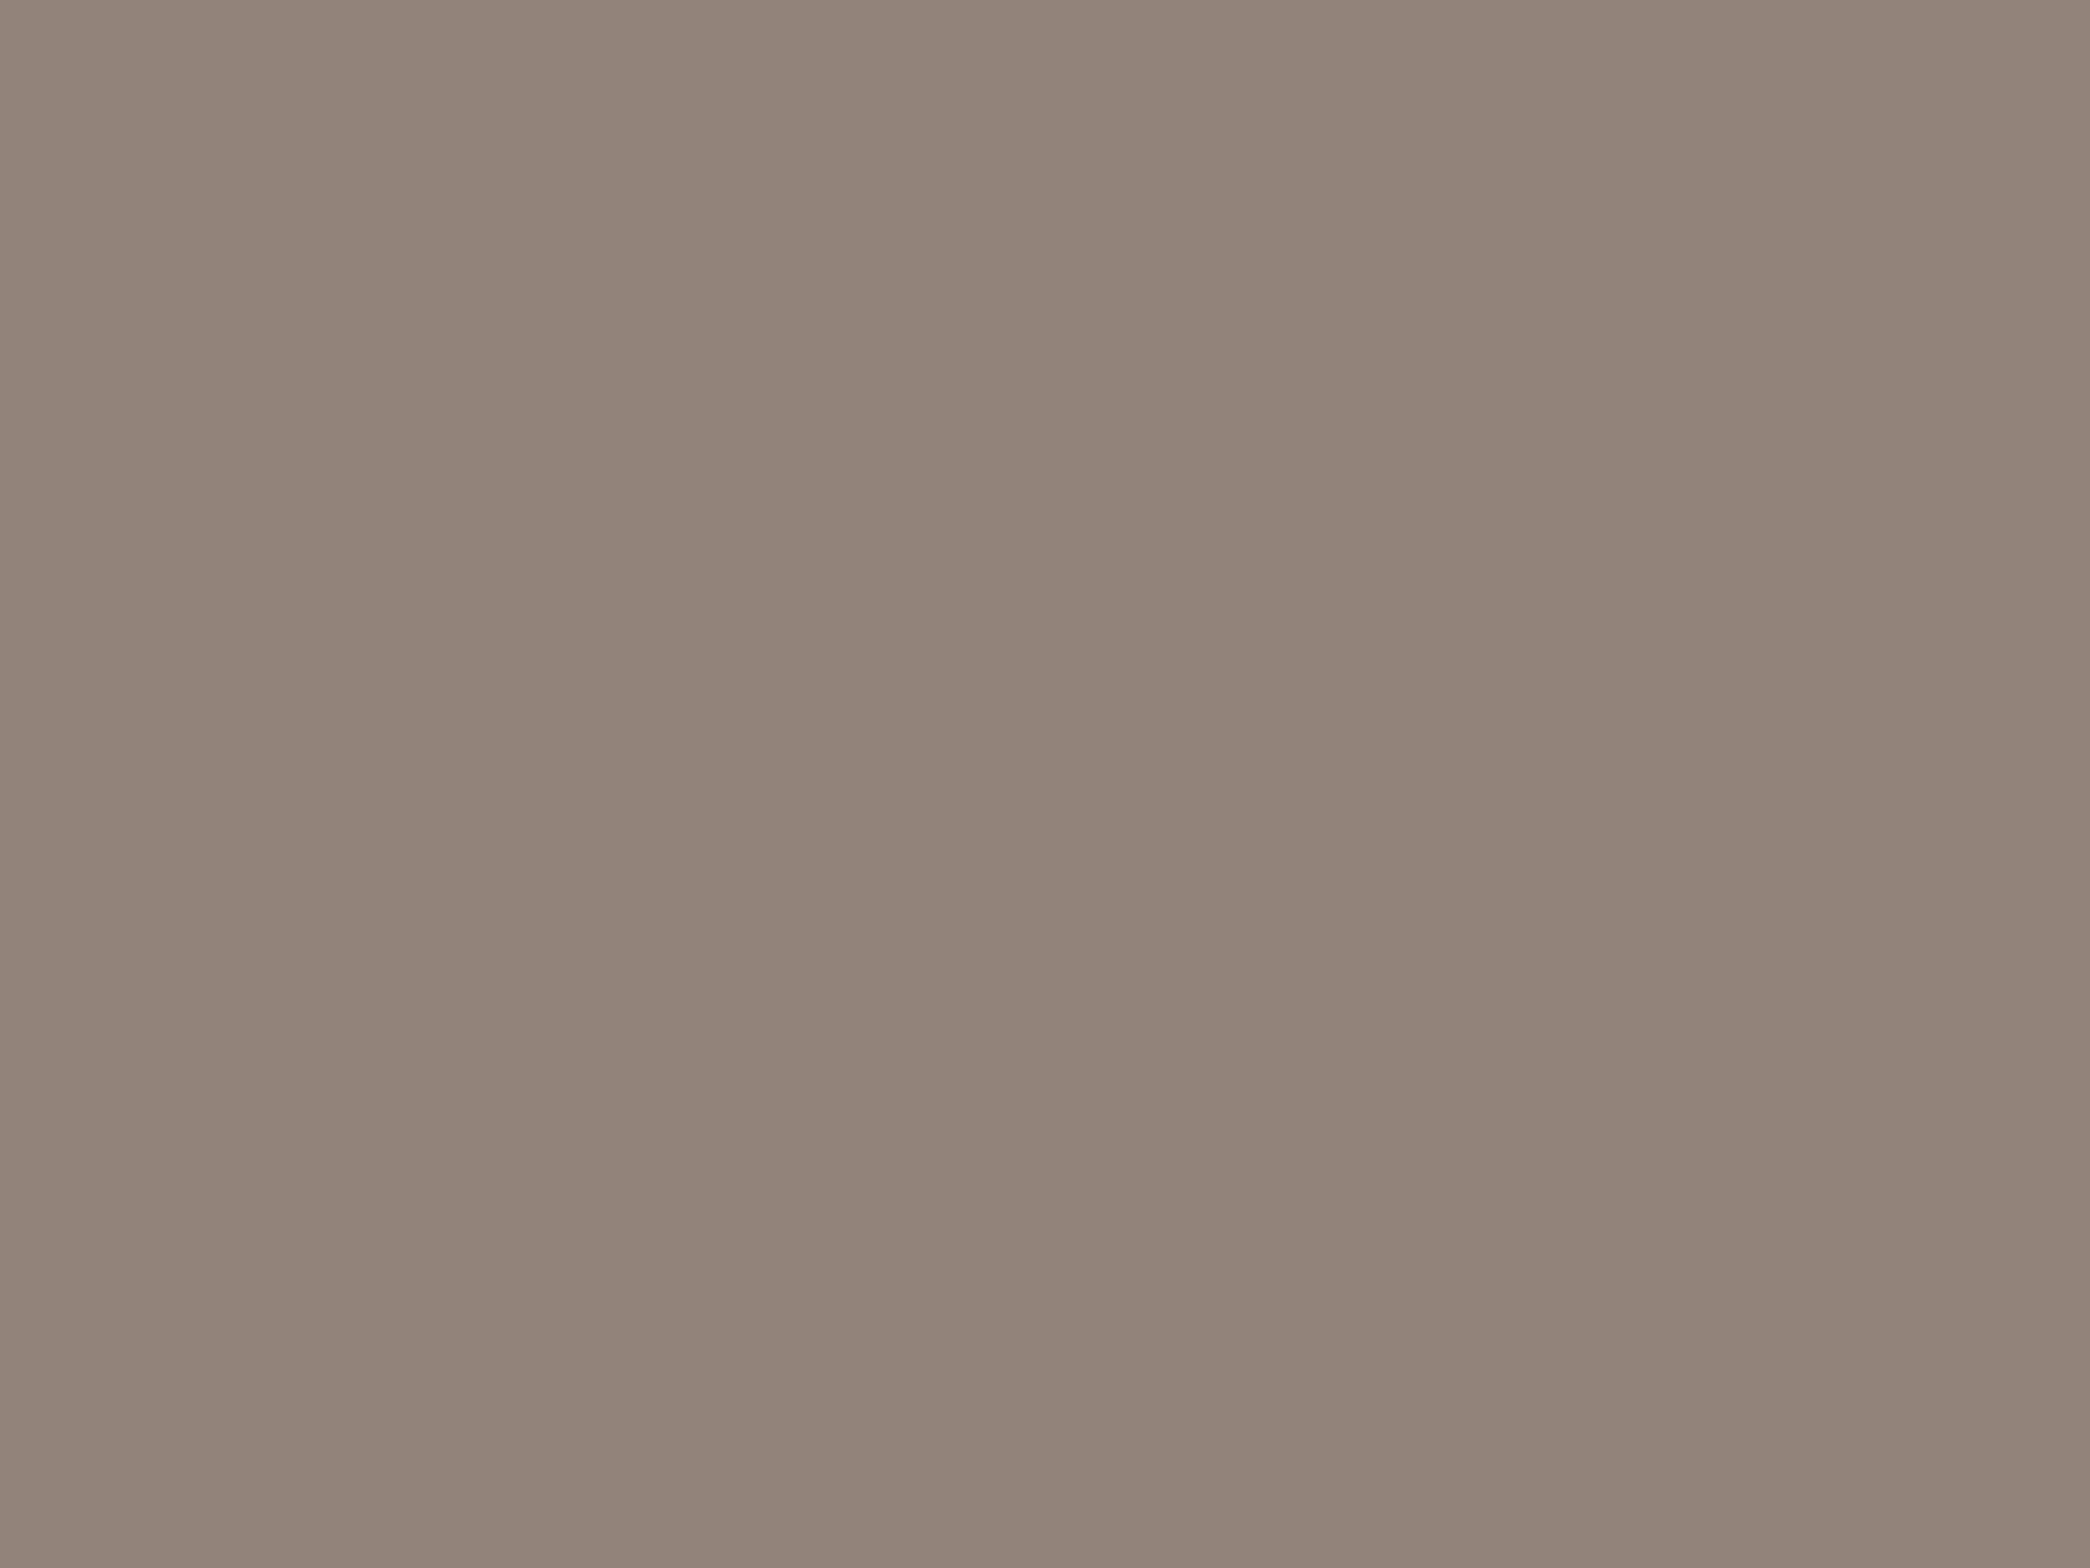 Архип Куинджи. Осенняя распутица (фрагмент). 1872. Государственный Русский музей, Санкт-Петербург